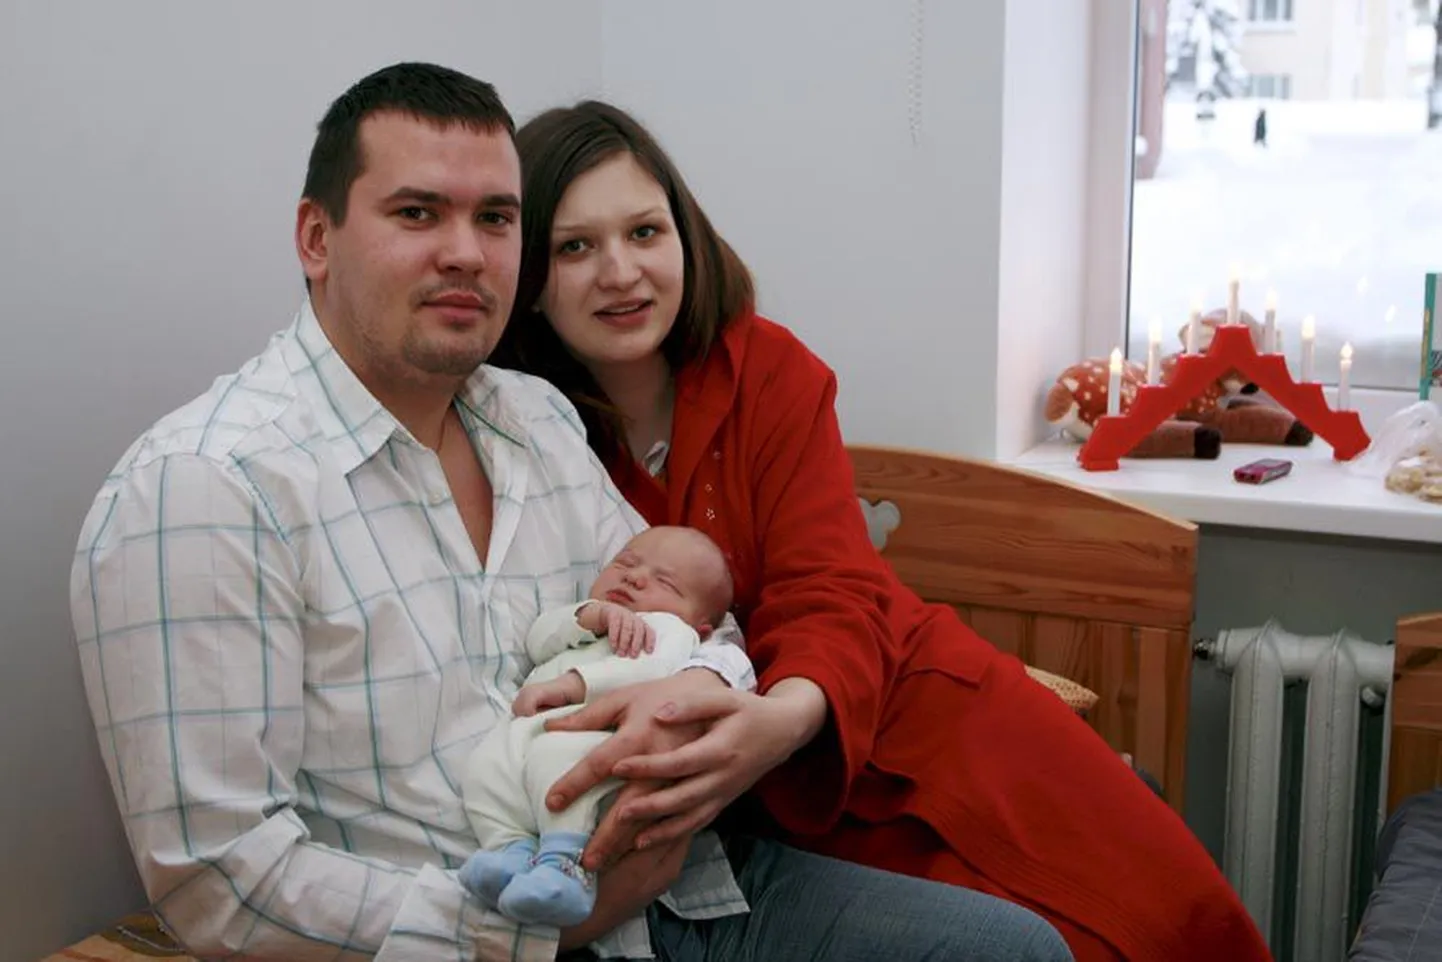 Paidelaste Kristo Kivisoo ja Anu Annuse perre sündis 3. jaanuaril poeg Simo, kes on esimene tänavu Järvamaa haigla sünnitusosakonnas ilmavalgust näinud laps. Eelmisel aastal tuli sünnitusosakonnas ilmale 386 uut ilmakodanikku.